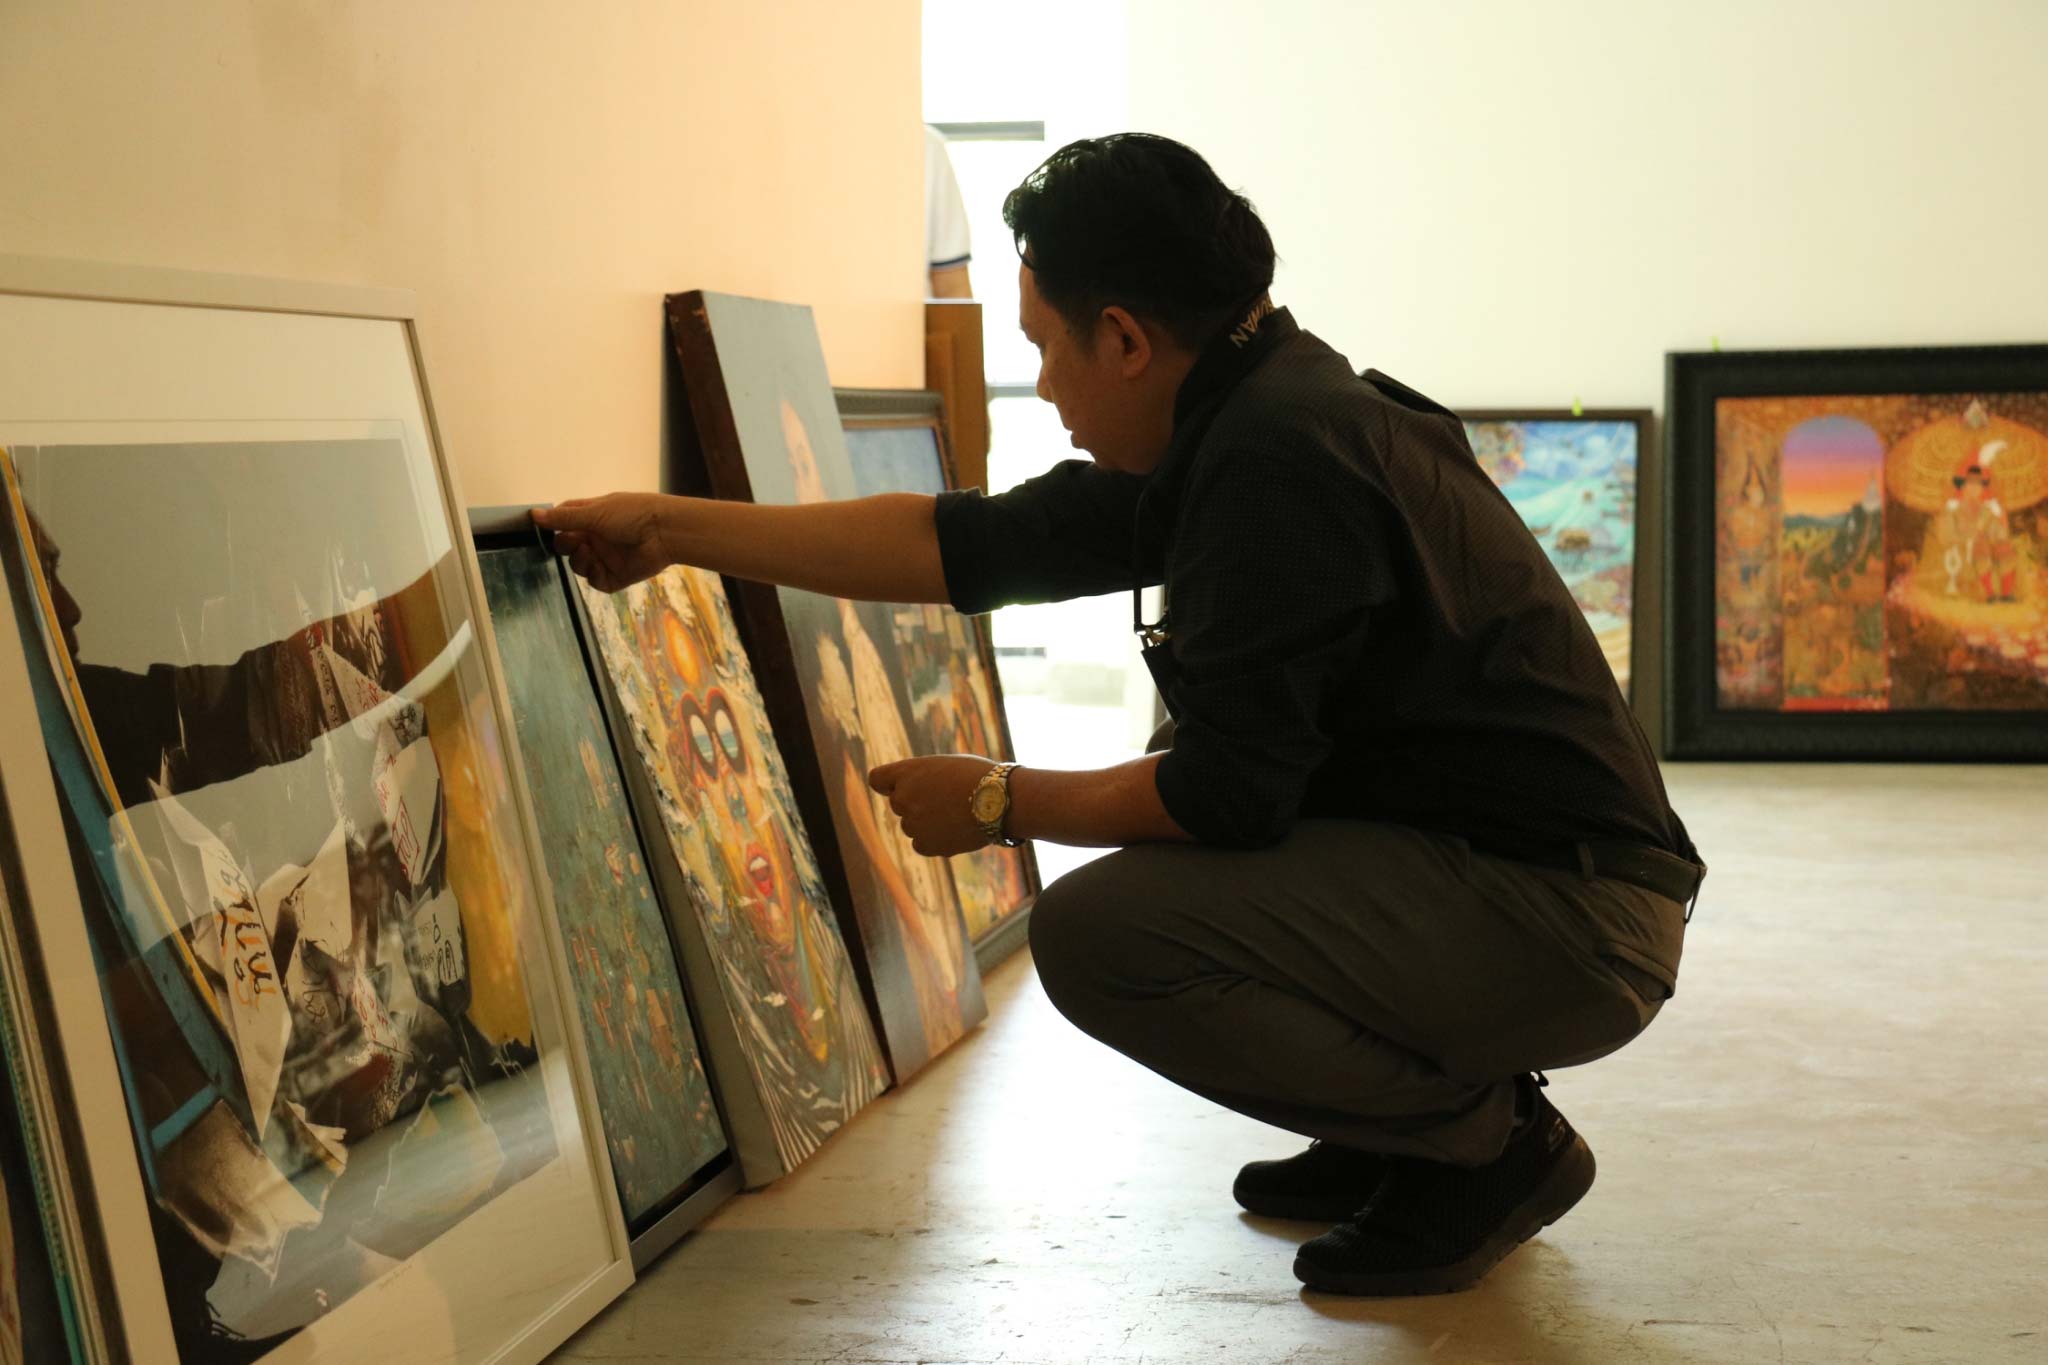 ผลการตัดสินการประกวดศิลปกรรมไทยออยล์ ครั้ง 1 ประจาปี 2562 หัวข้อ “ความสุขของคนไทย”| Announcement the Result : The 11st Thaioil Art Exhibition 2019